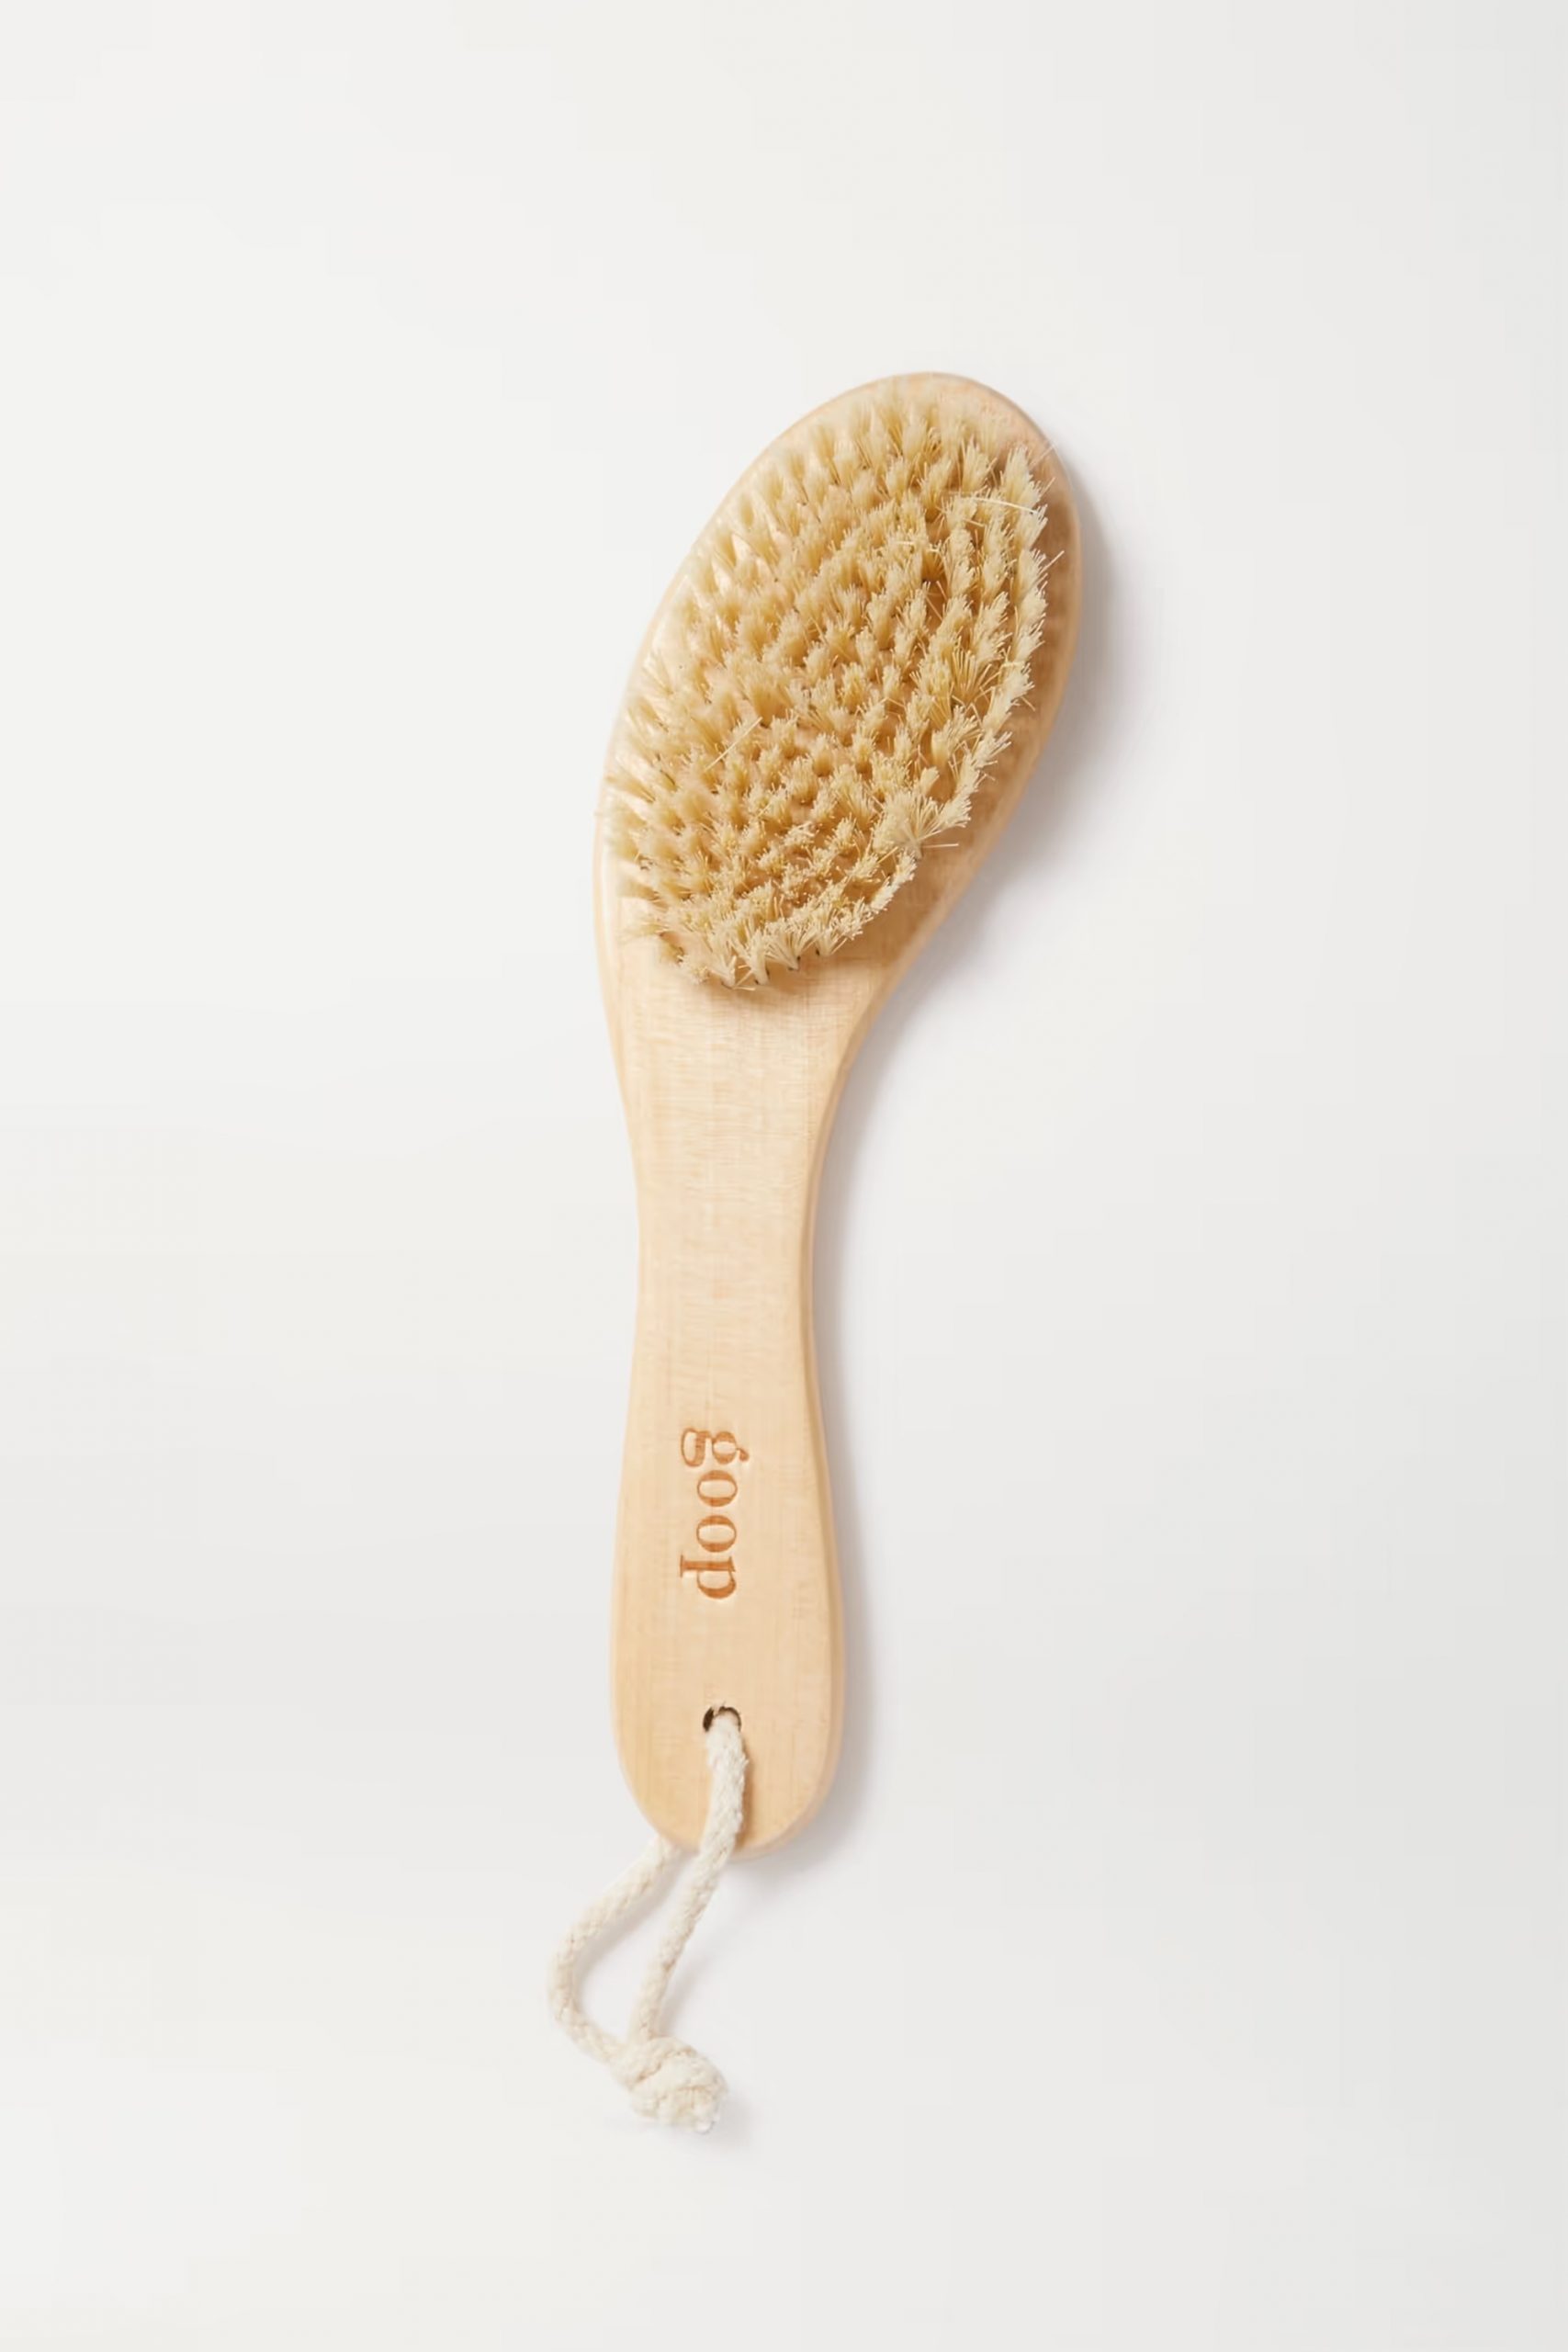 ban chai kho sang da miranda kerr Goop G.Tox Ultimate Dry Brush scaled - “Học lỏm” cách làm sáng da cơ thể với bàn chải khô từ Miranda Kerr